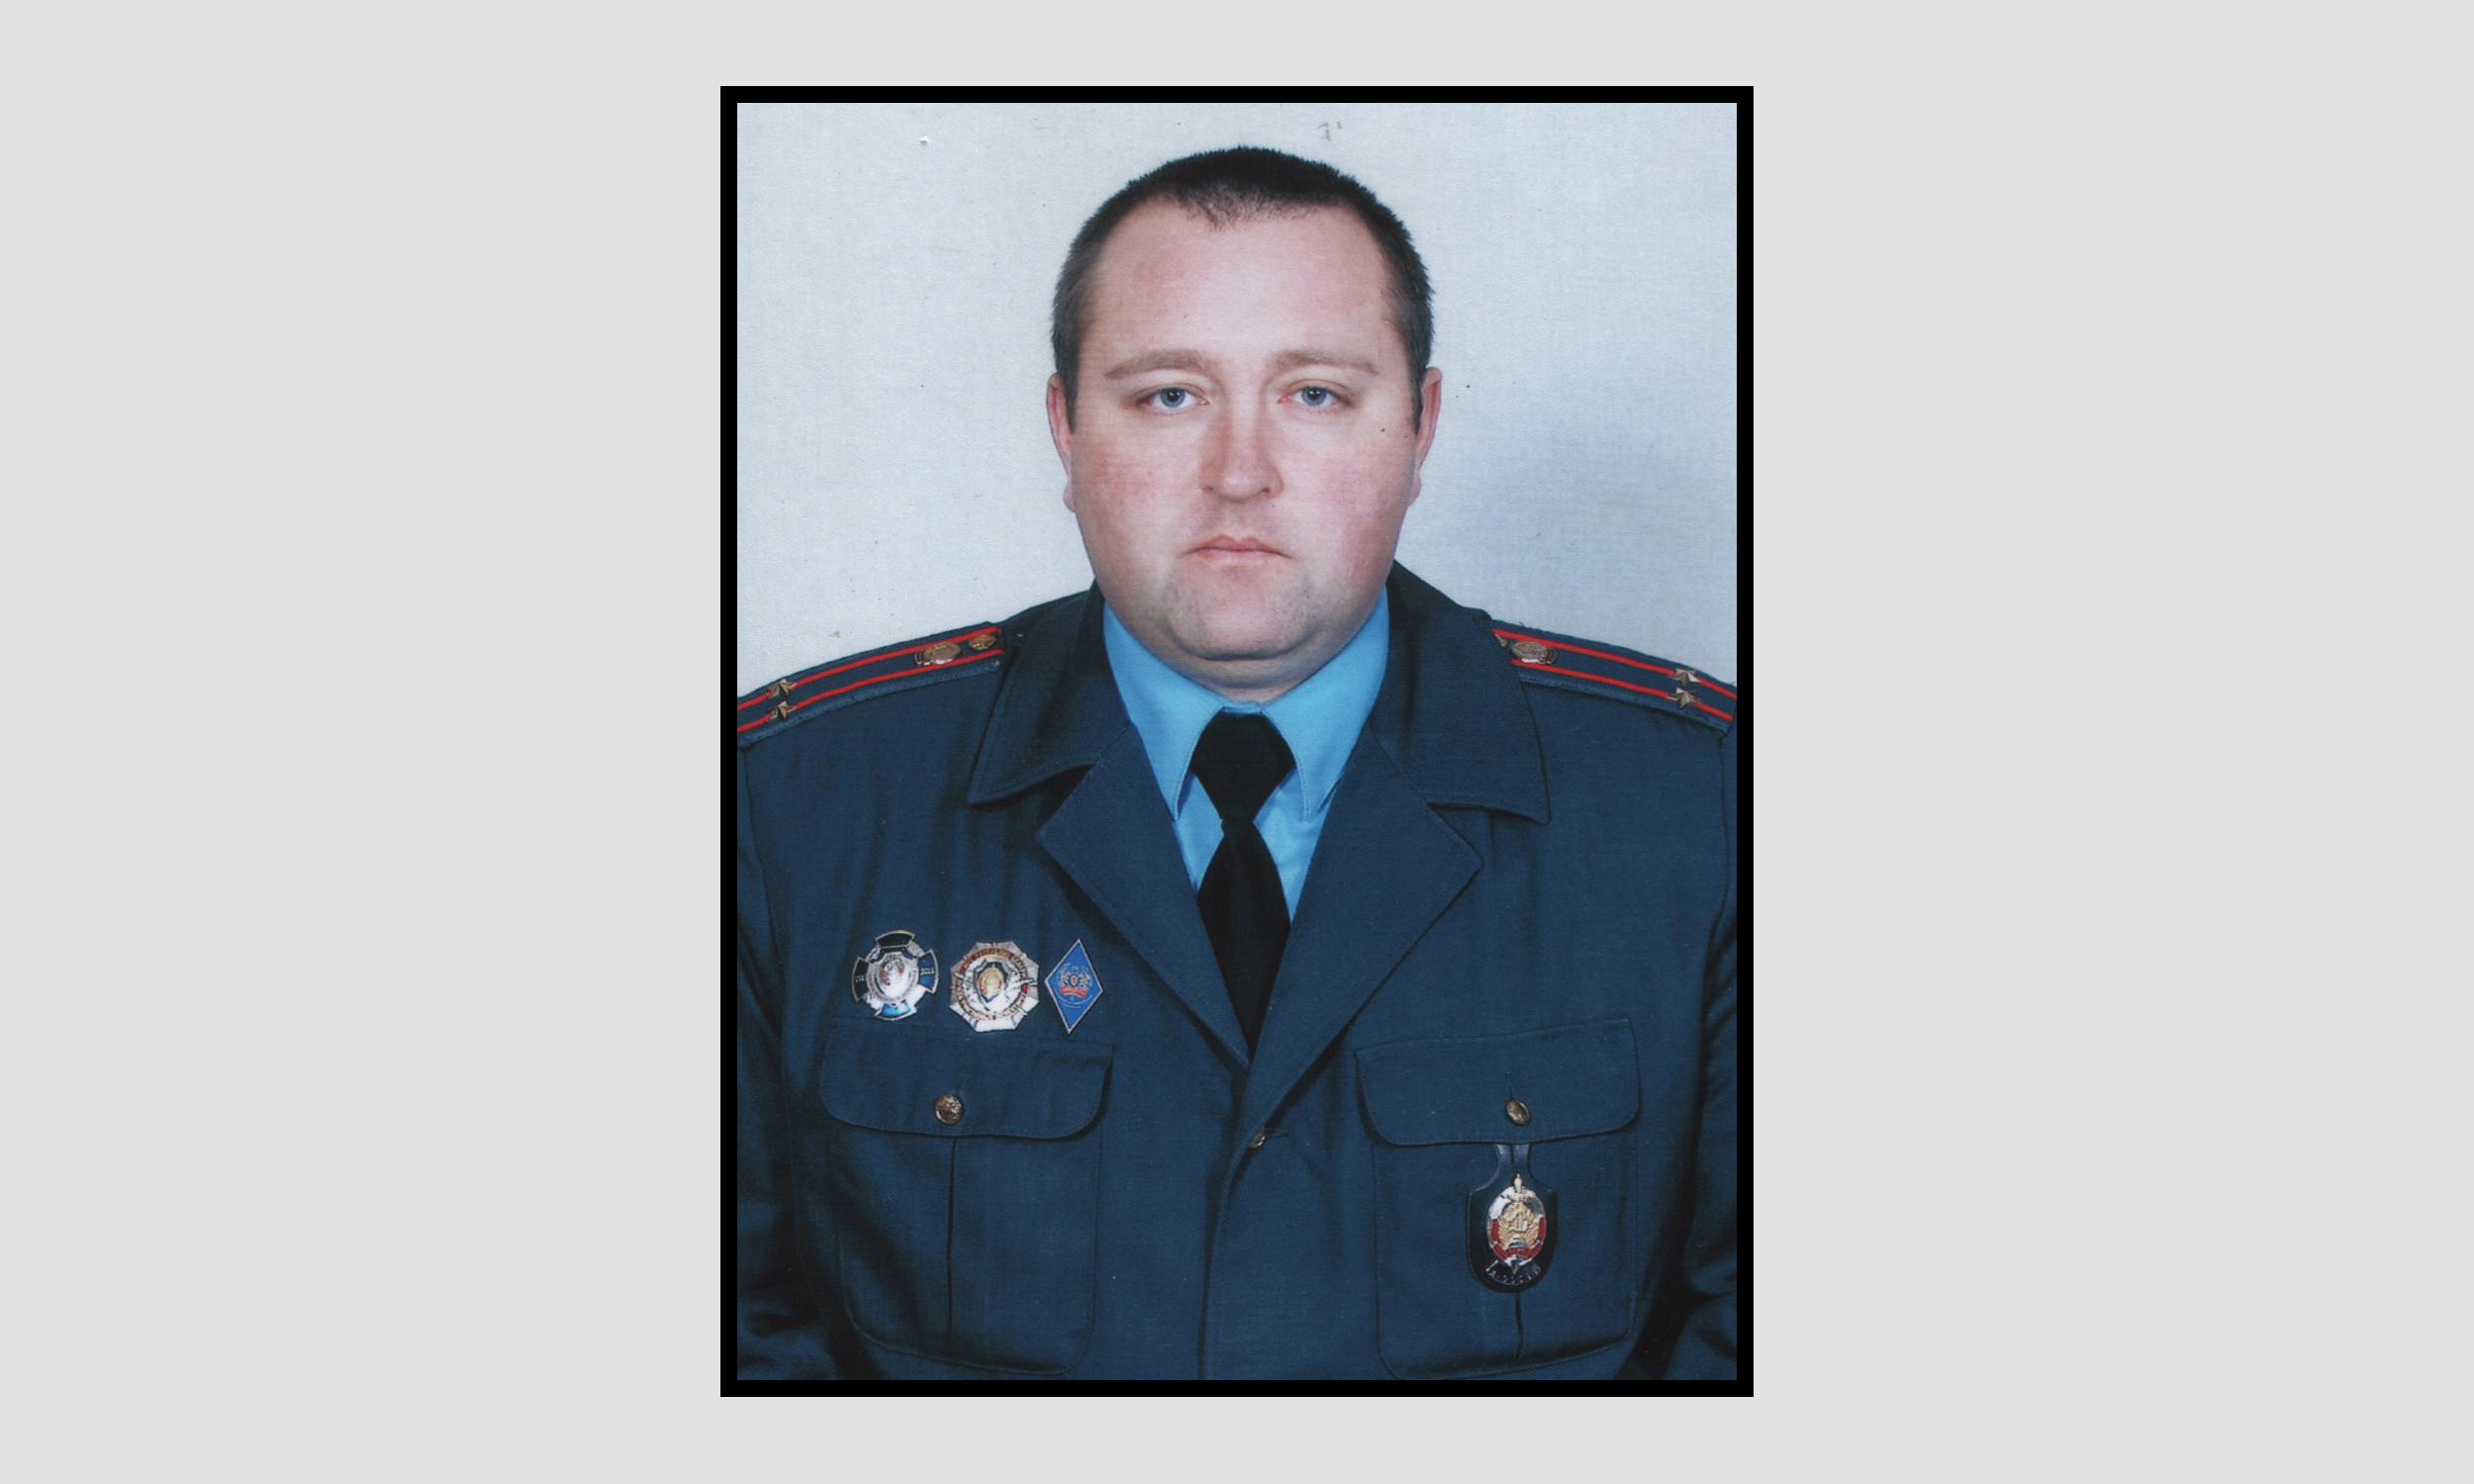 Трагически оборвалась жизнь 38-летнего подполковника милиции Александра Валерьевича Костоянского.